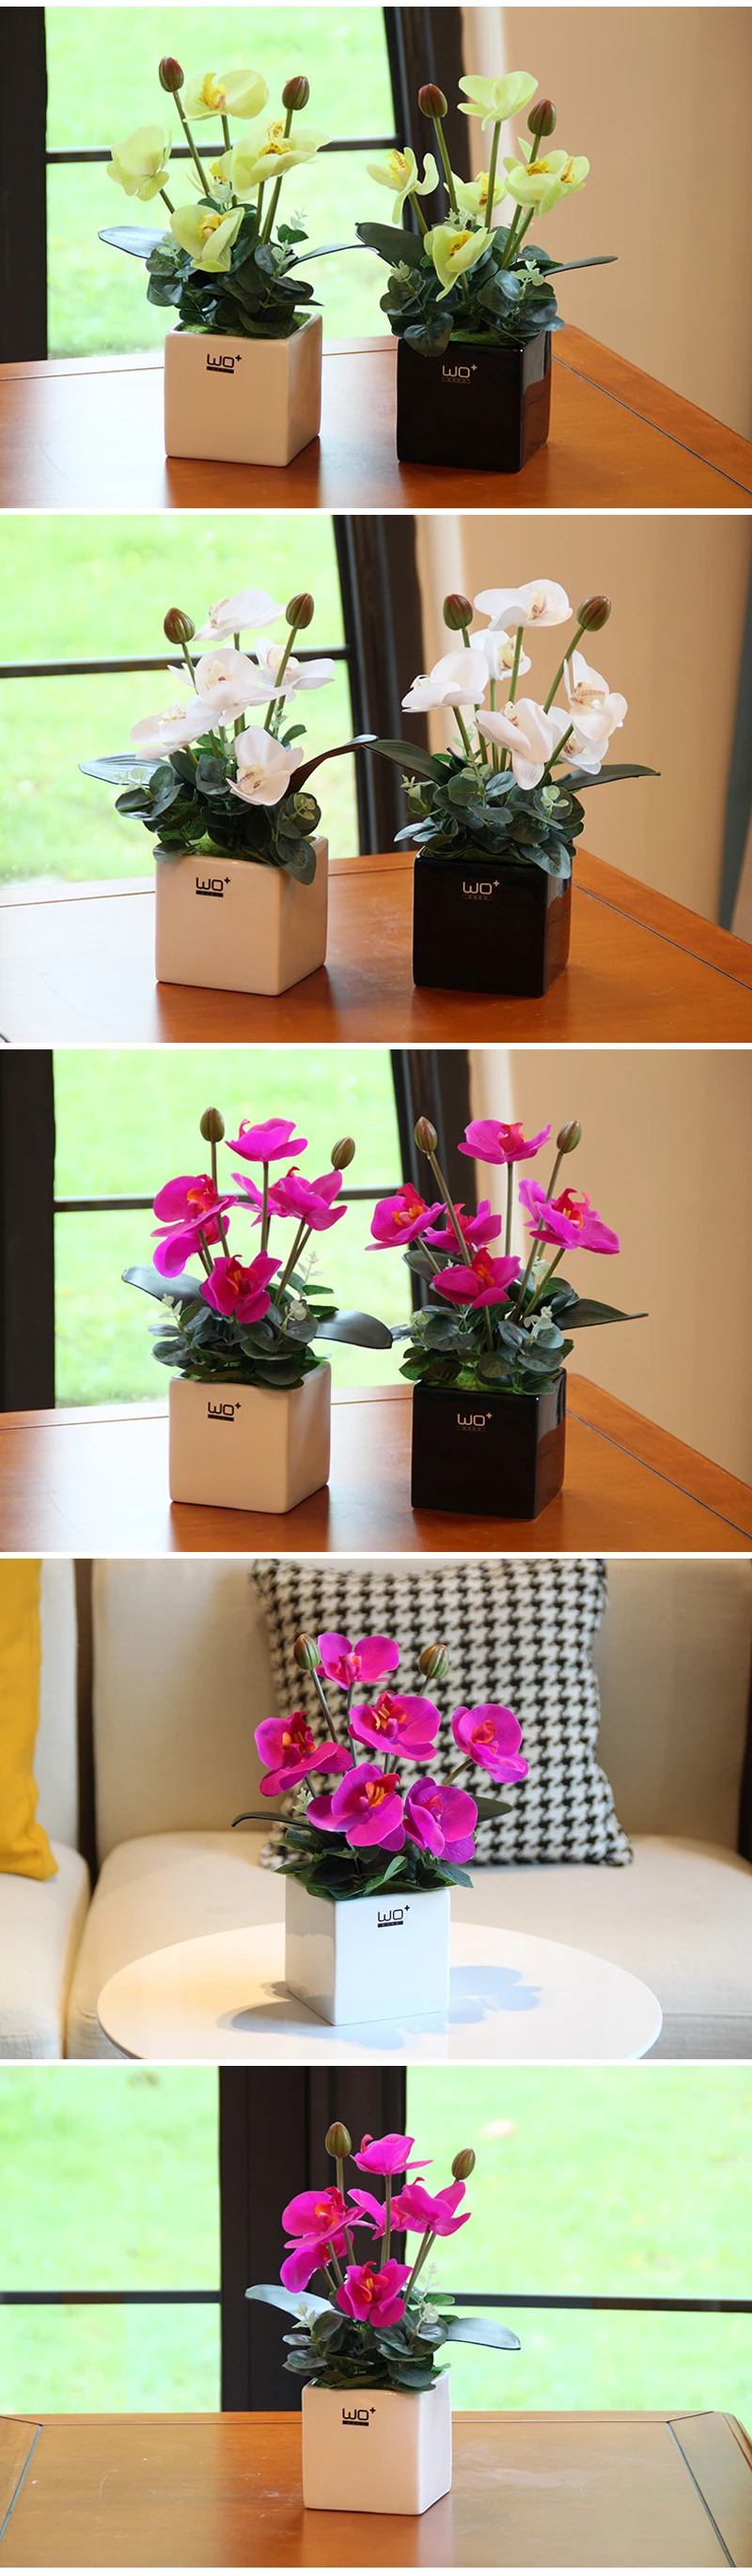 Искусственный ПУ бабочка Орхидея набор бонсай в горшках домашний Декор керамическая ваза растения в горшках цветы Свадебные украшения вечерние принадлежности